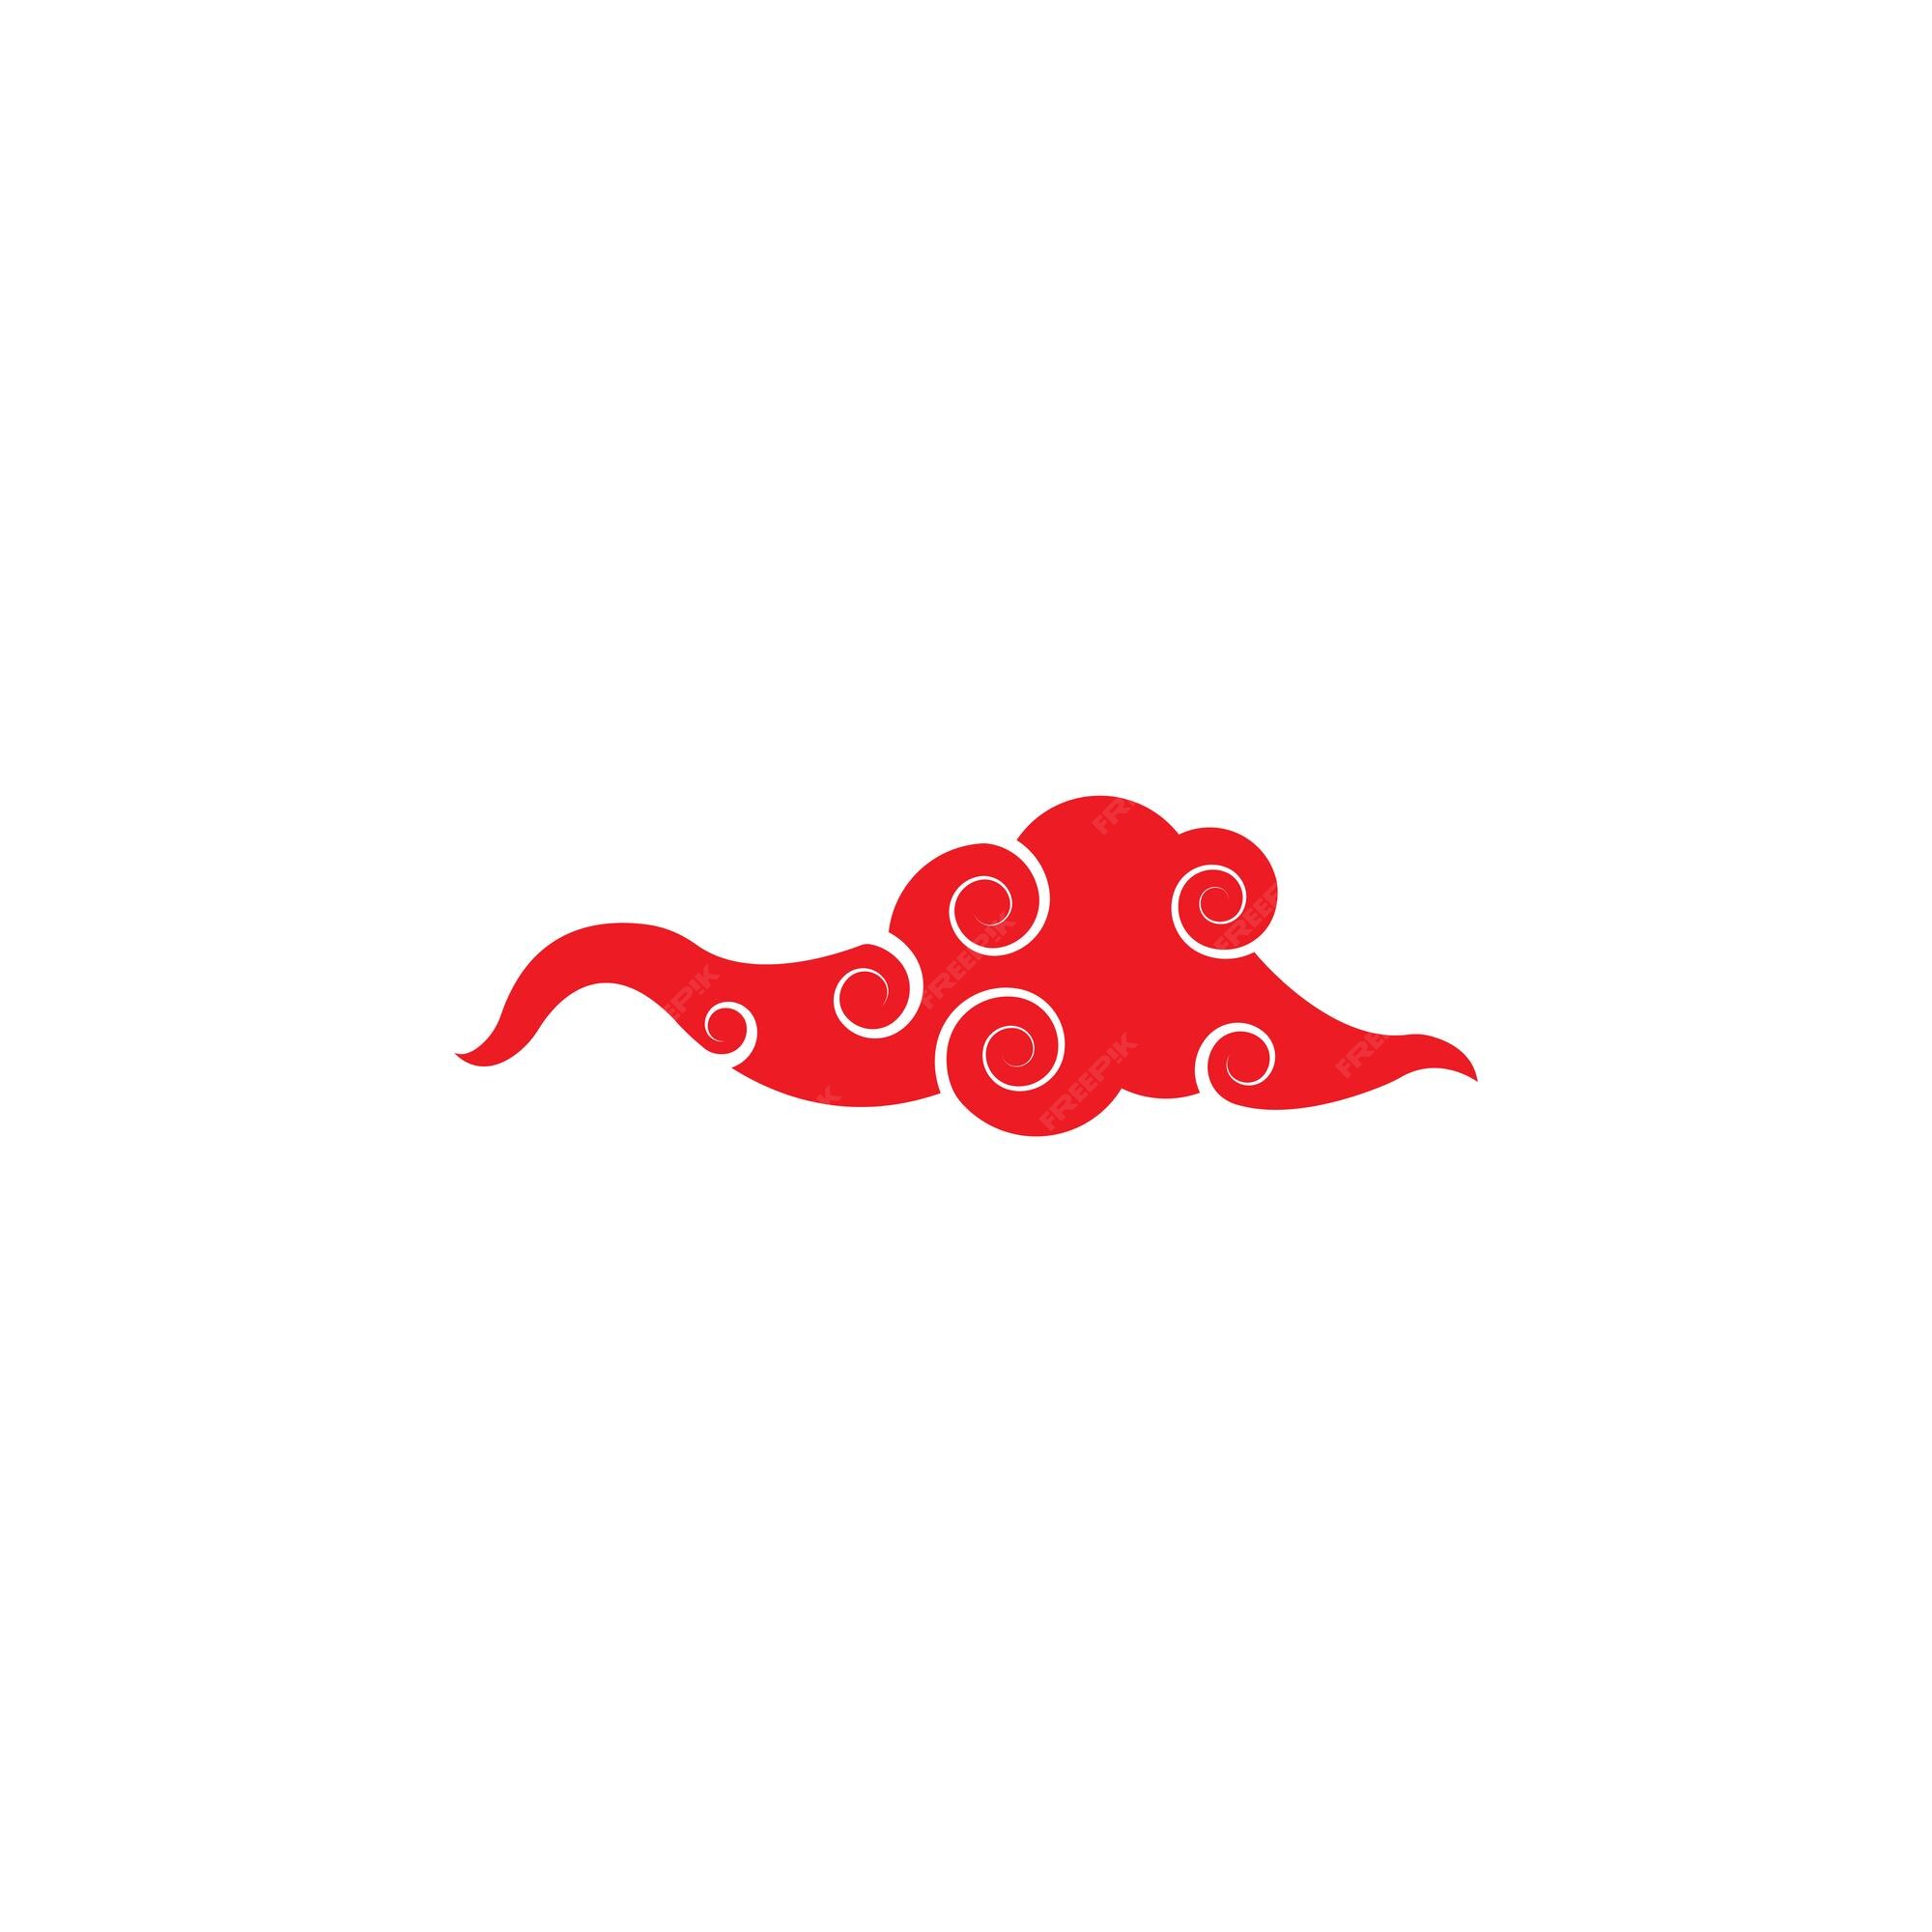 Design de ilustração de ícone de vetor de modelo de nuvem chinesa